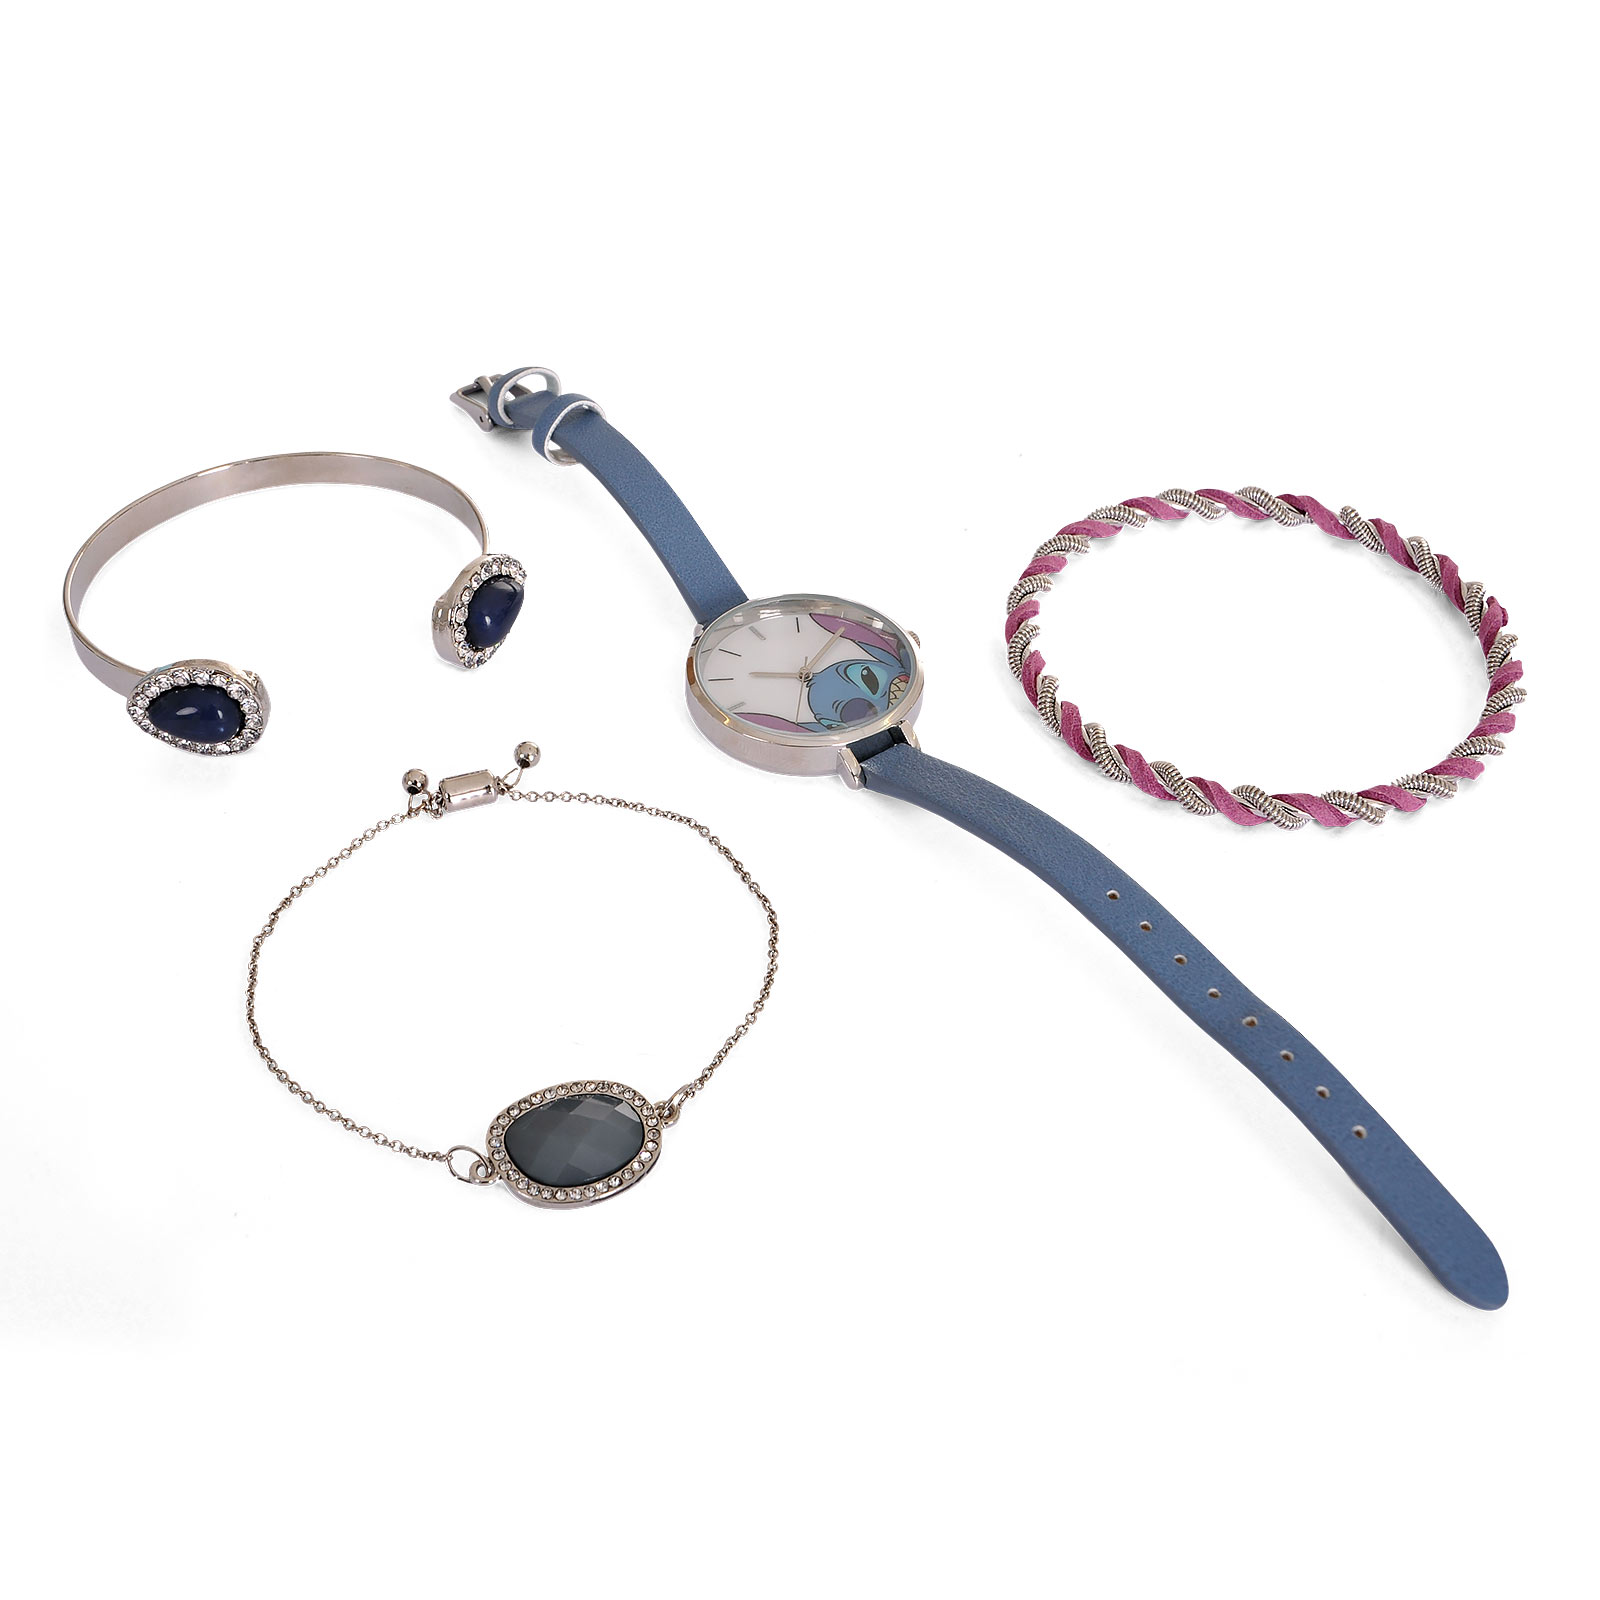 Lilo & Stitch - Wristwatch with Jewelry Set